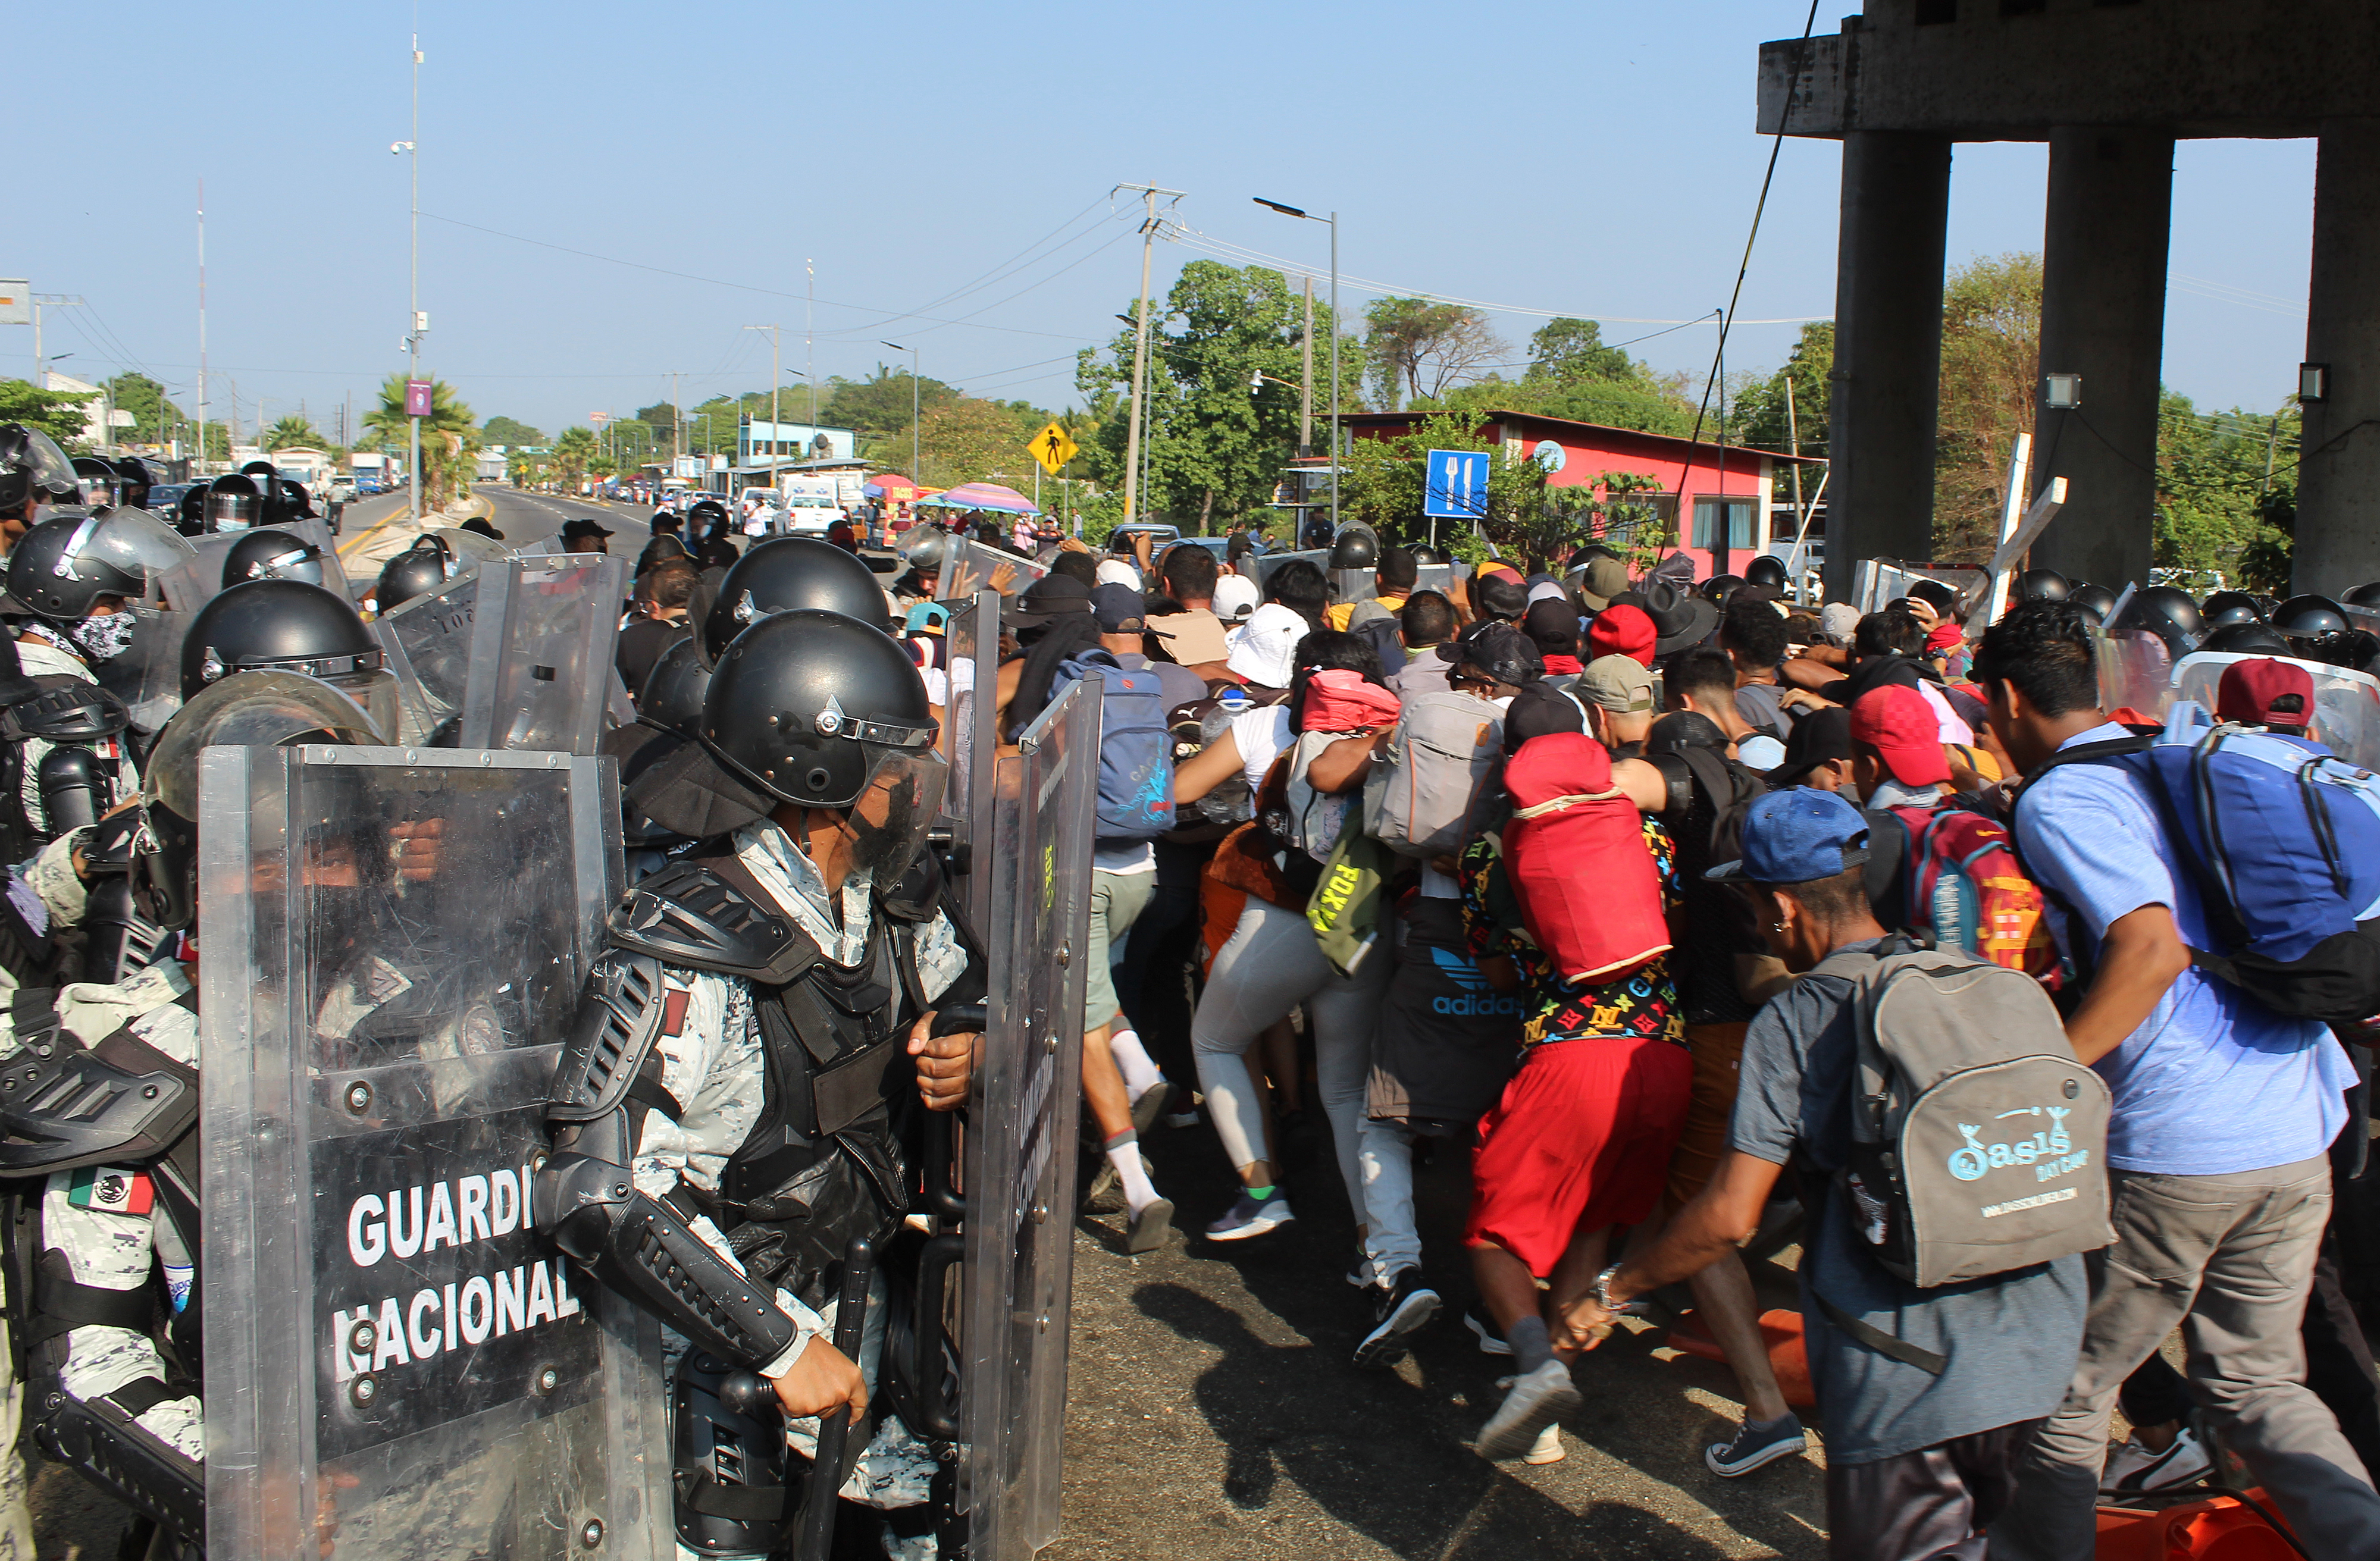 Una caravana migrante intenta atravesar un cerco policial en Chiapas, México. EE. UU. teme un incremento de la migración que saturaría su frontera sur. (Foto Prensa Libre: EFE)